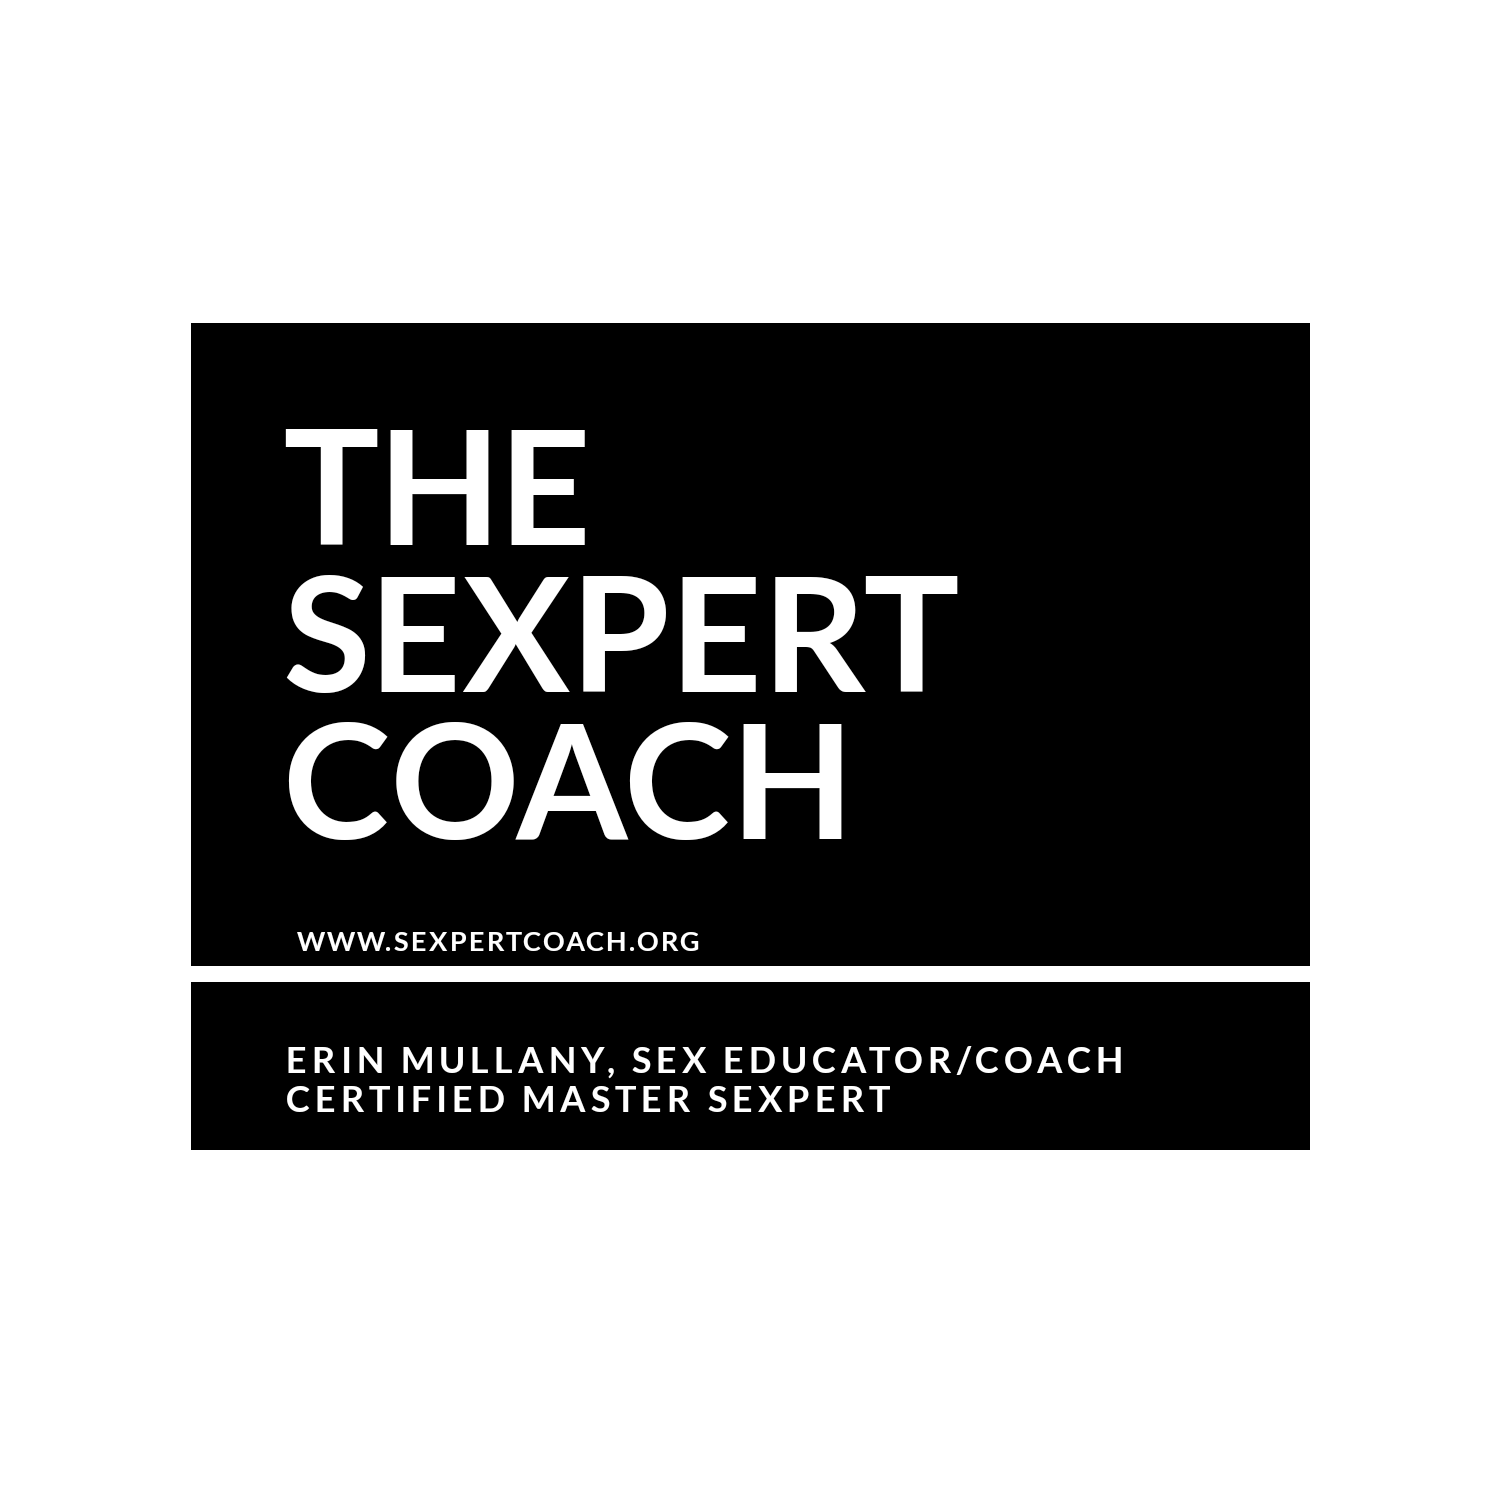 SexpertCoach.org